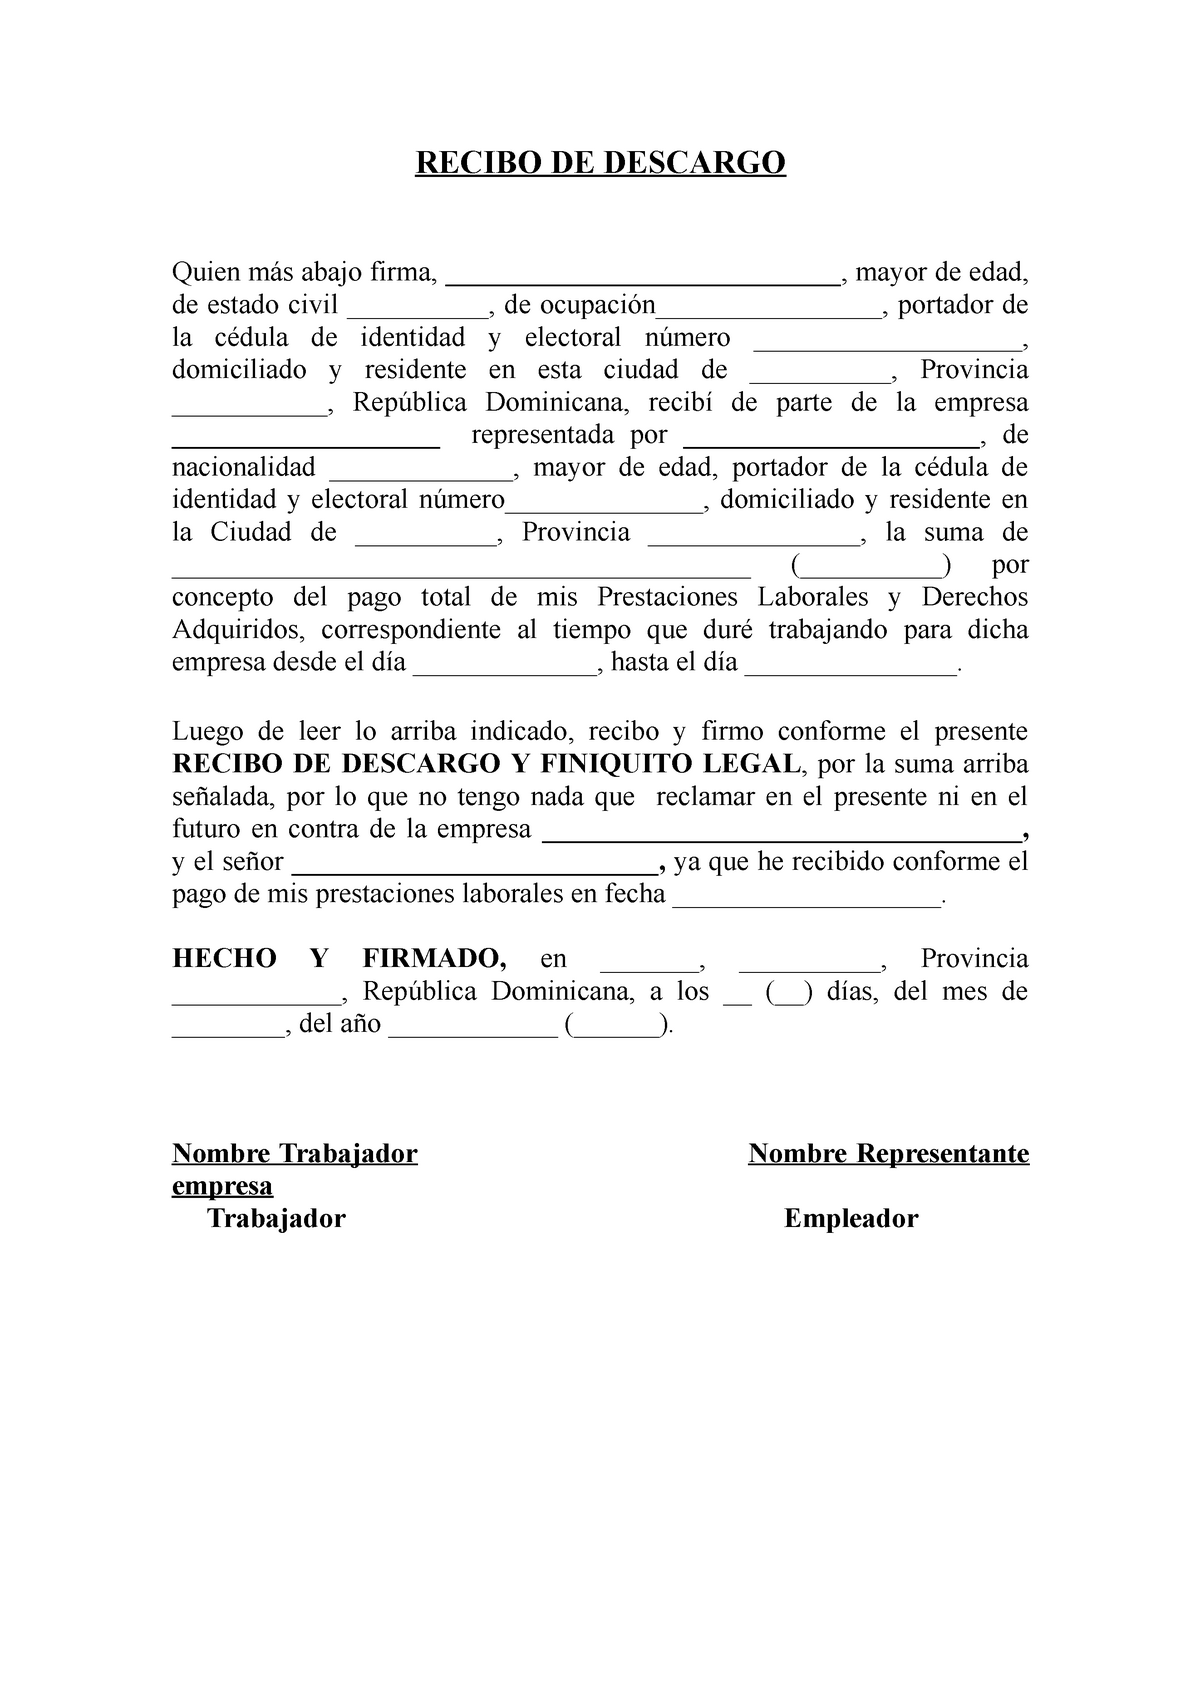 Modelo Recibo DE Descargo Y FINIQUITO LABORAL - RECIBO DE DESCARGO Quien  más abajo firma, - Studocu